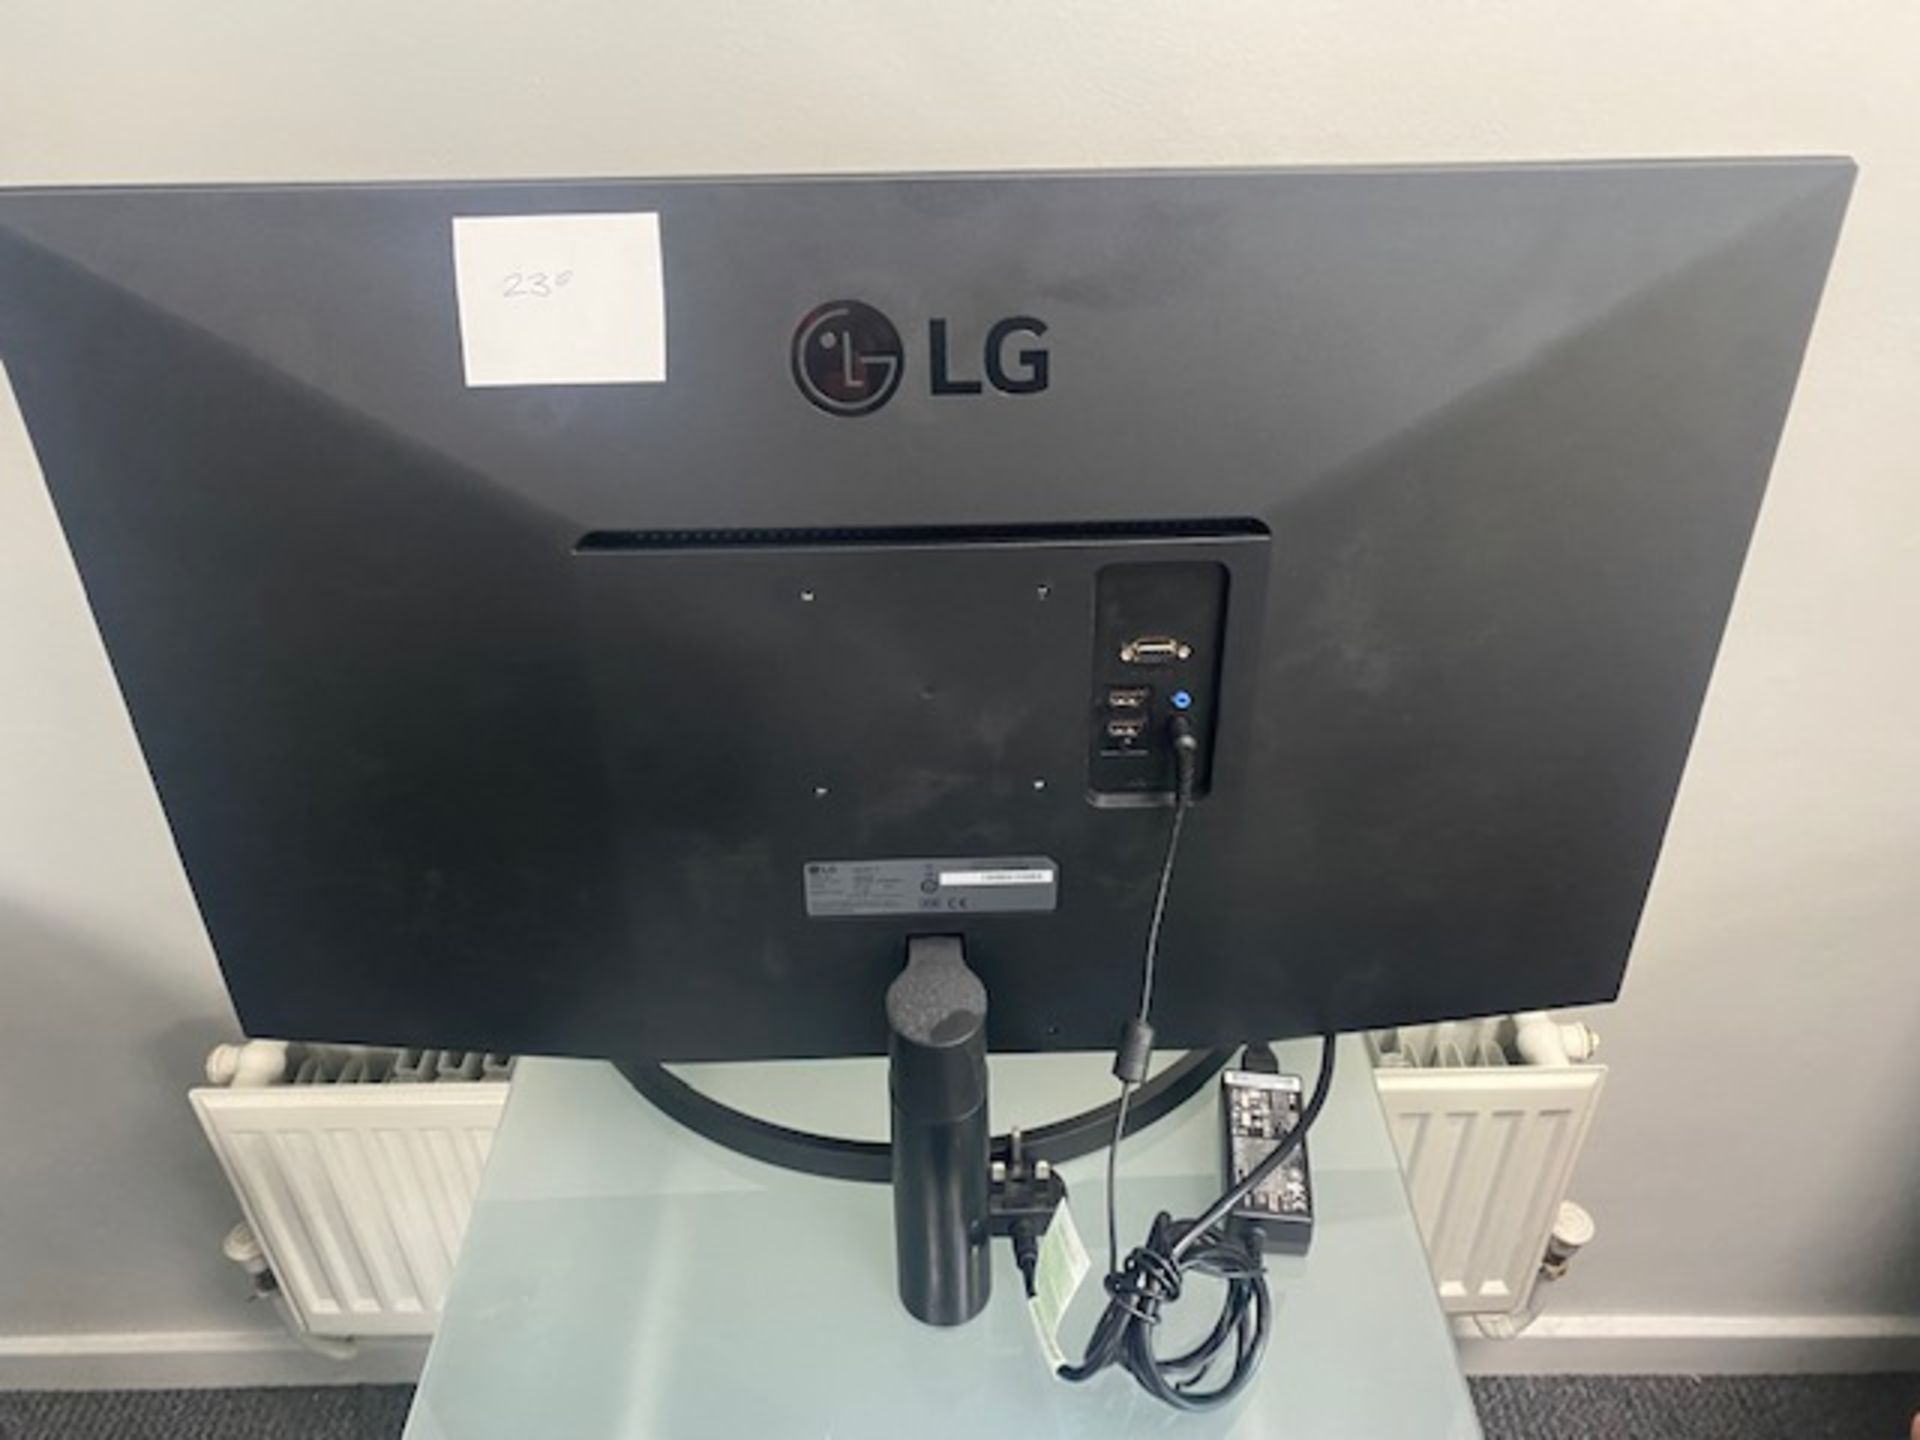 LG 32” Computer monitor model no - 32ML600M-B - Image 2 of 3